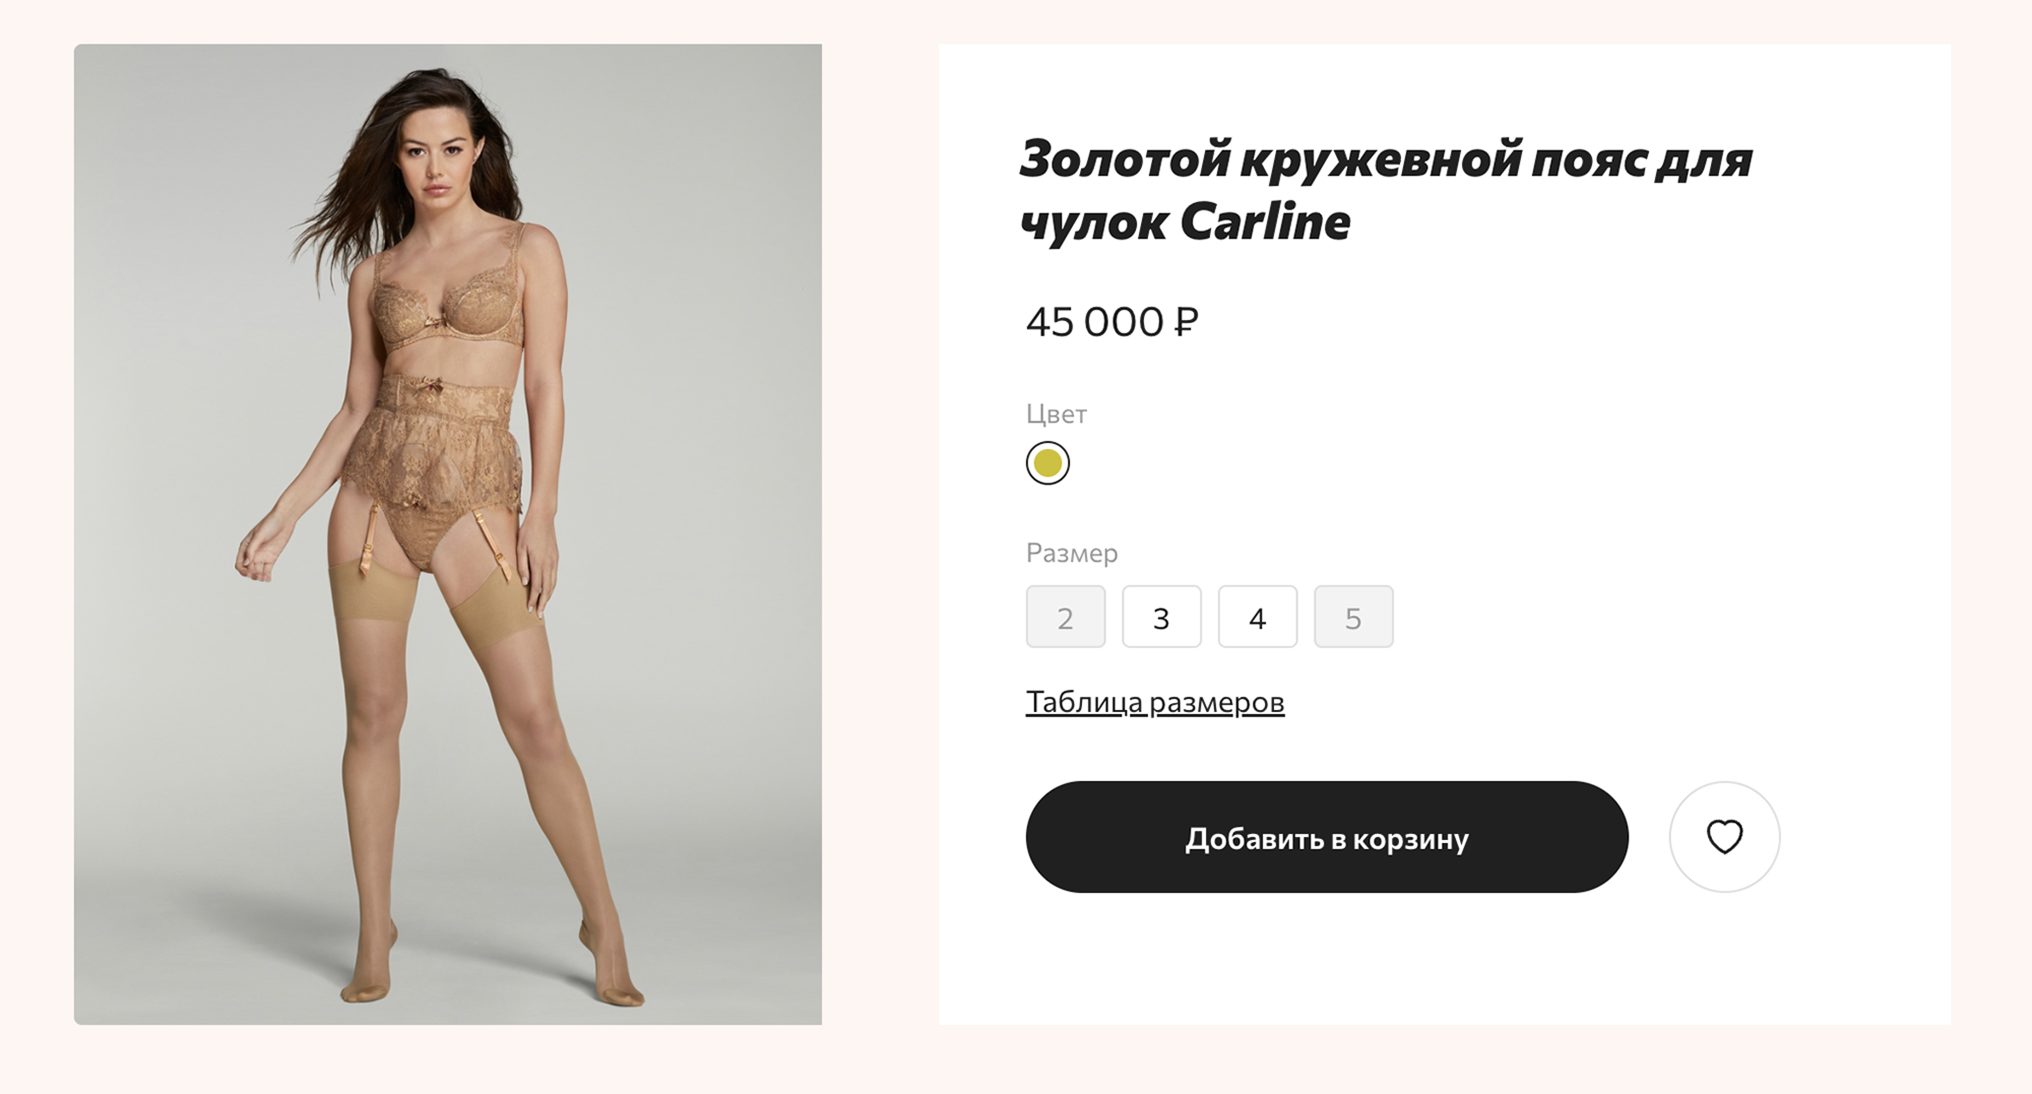 На официальном сайте один только пояс стоит 45 000 ₽. Источник: agentprovocateur.ru